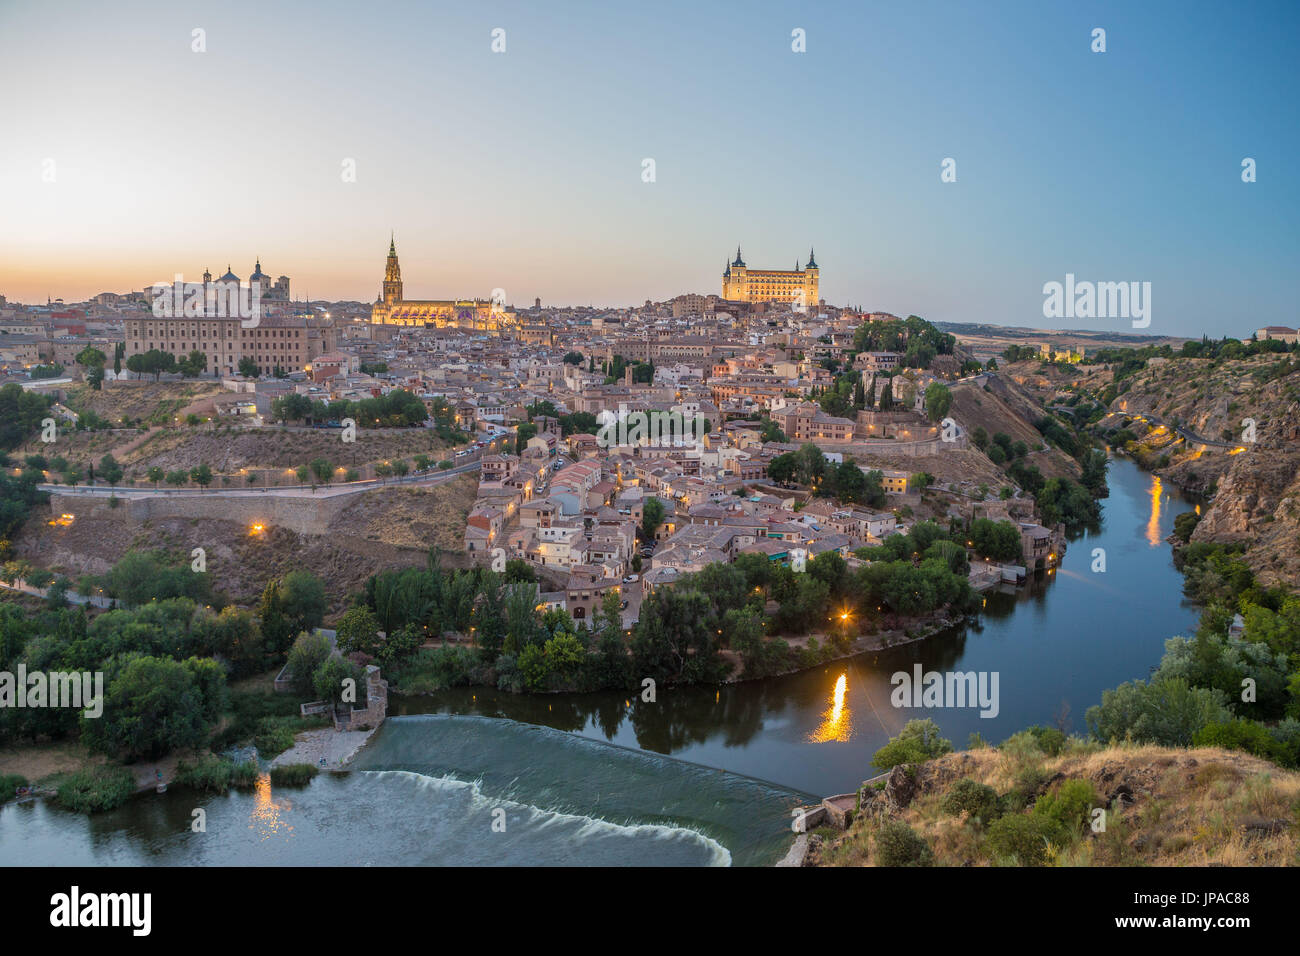 La Spagna, la città di Toledo, Tajo River, skyline, Foto Stock